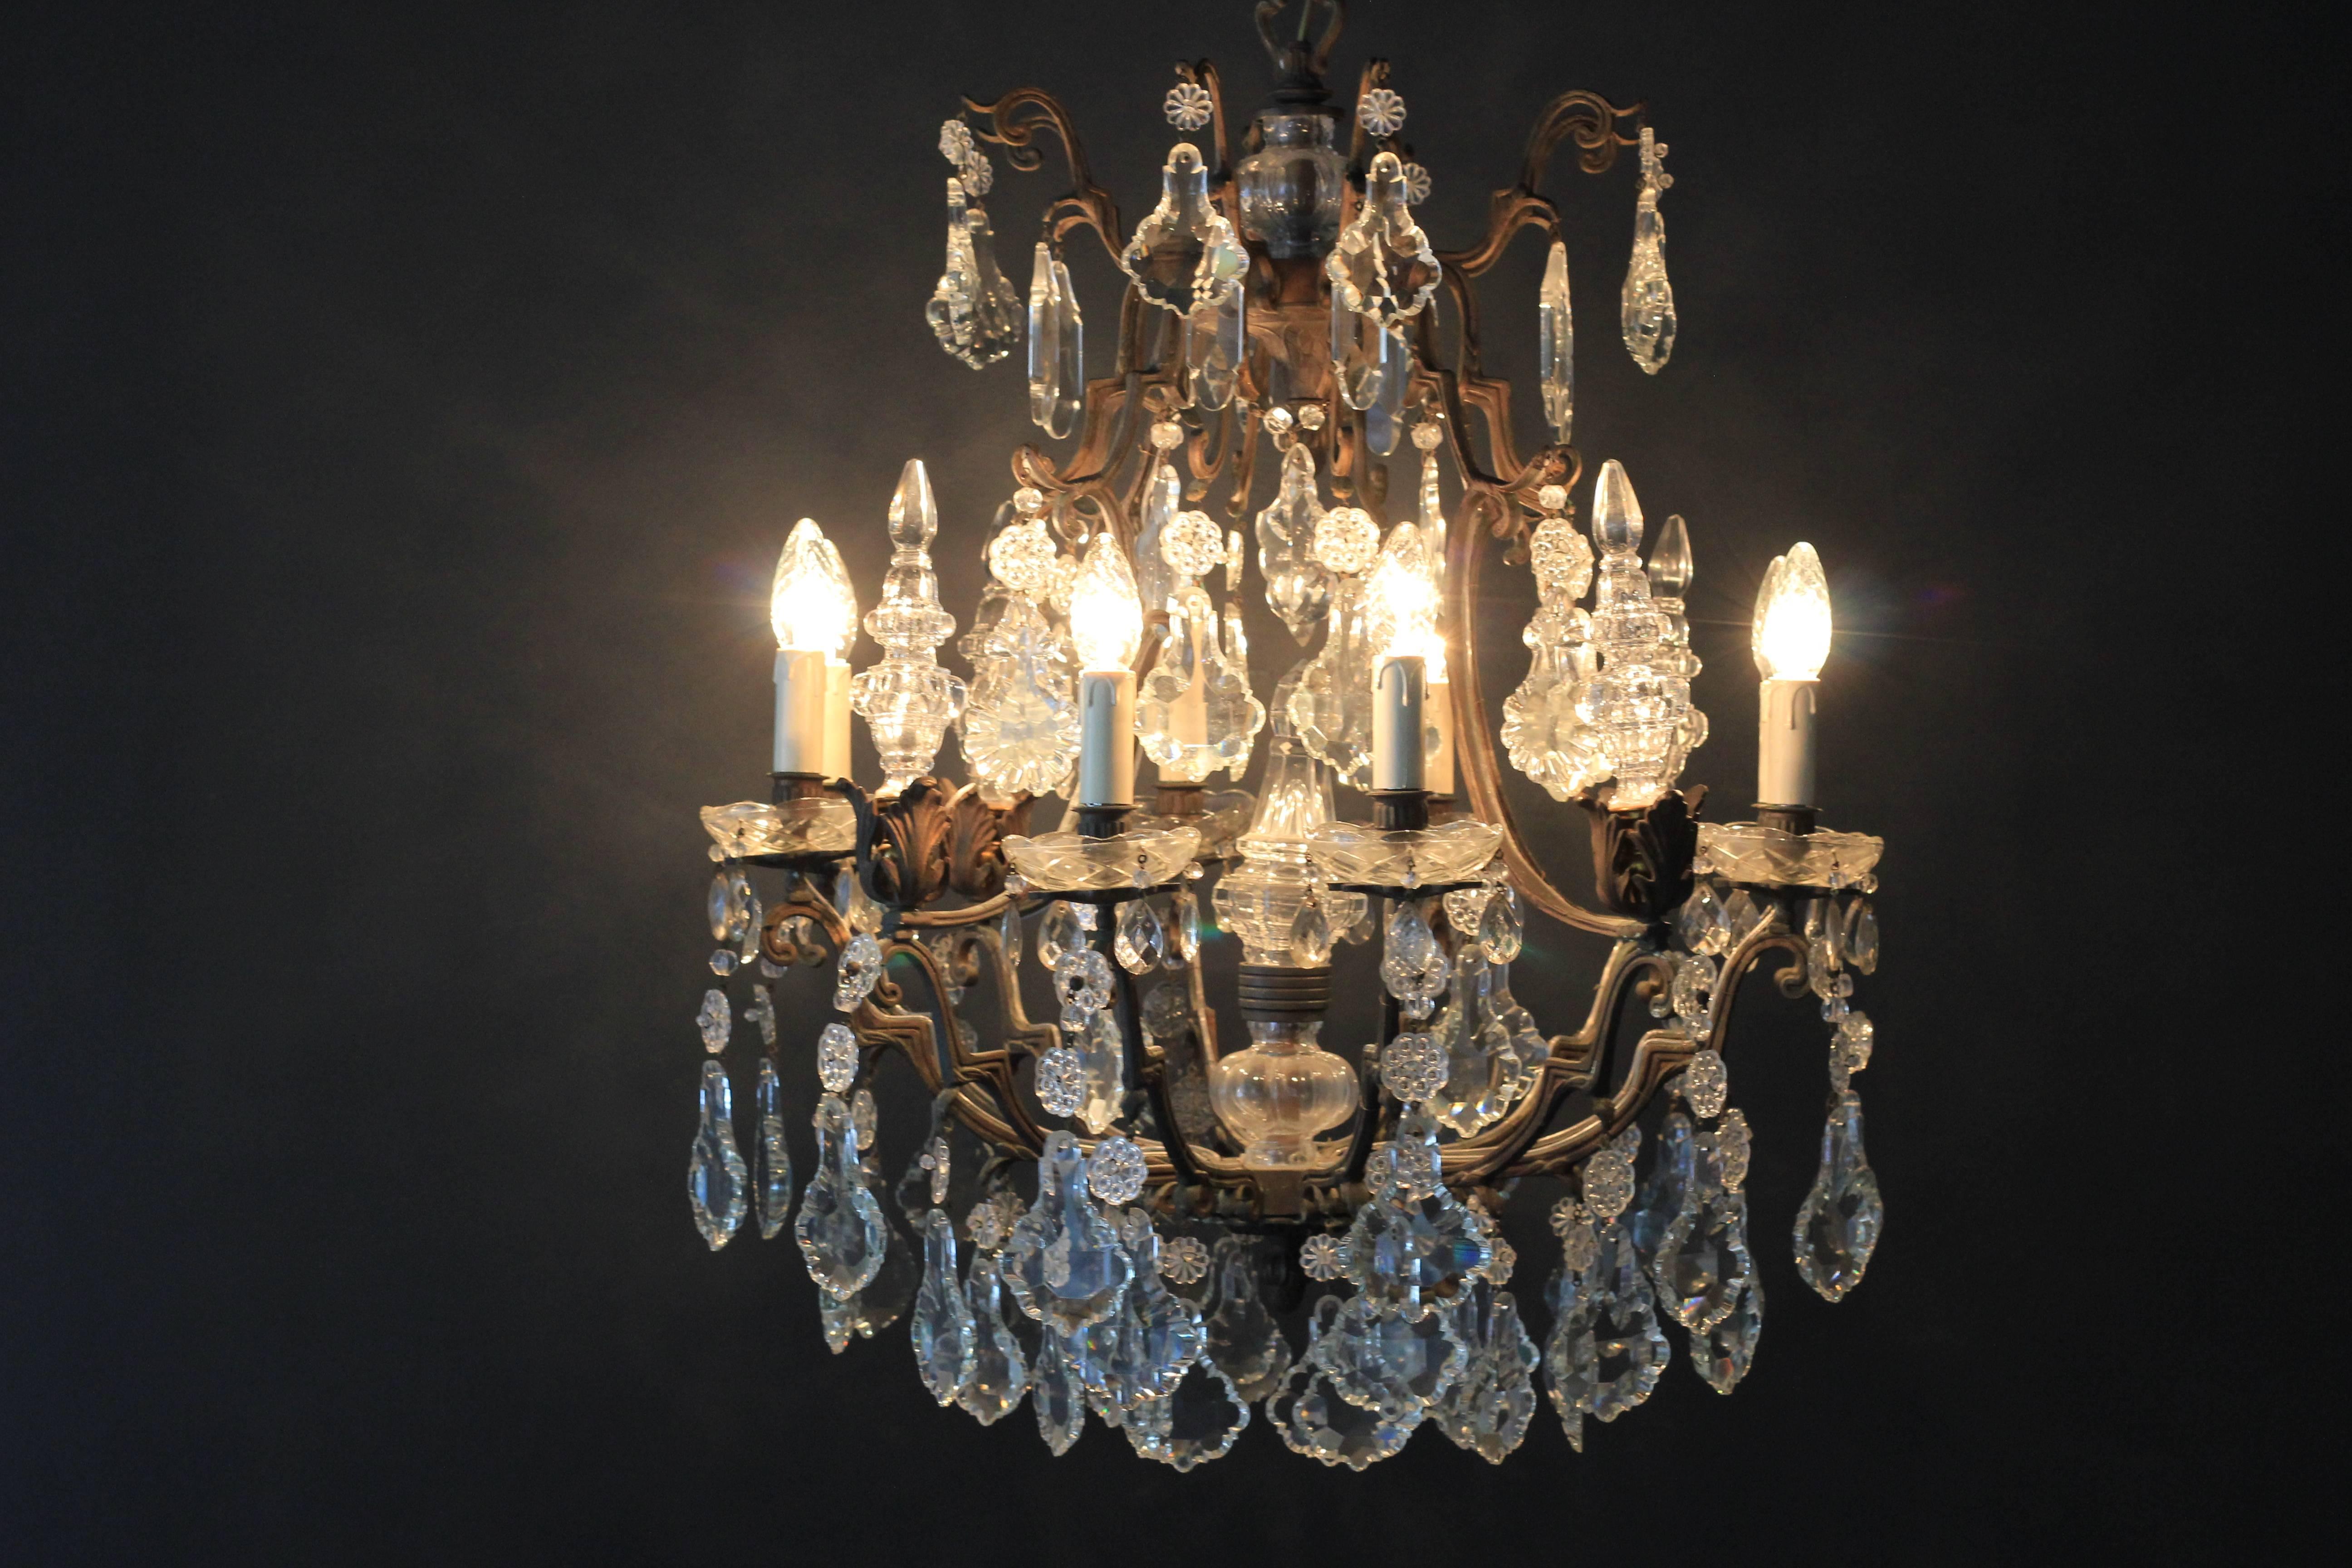 Fine Rarity Crystal Chandelier 1920 Lustre Antique Ceiling Lamp Art Nouveau WoW 1